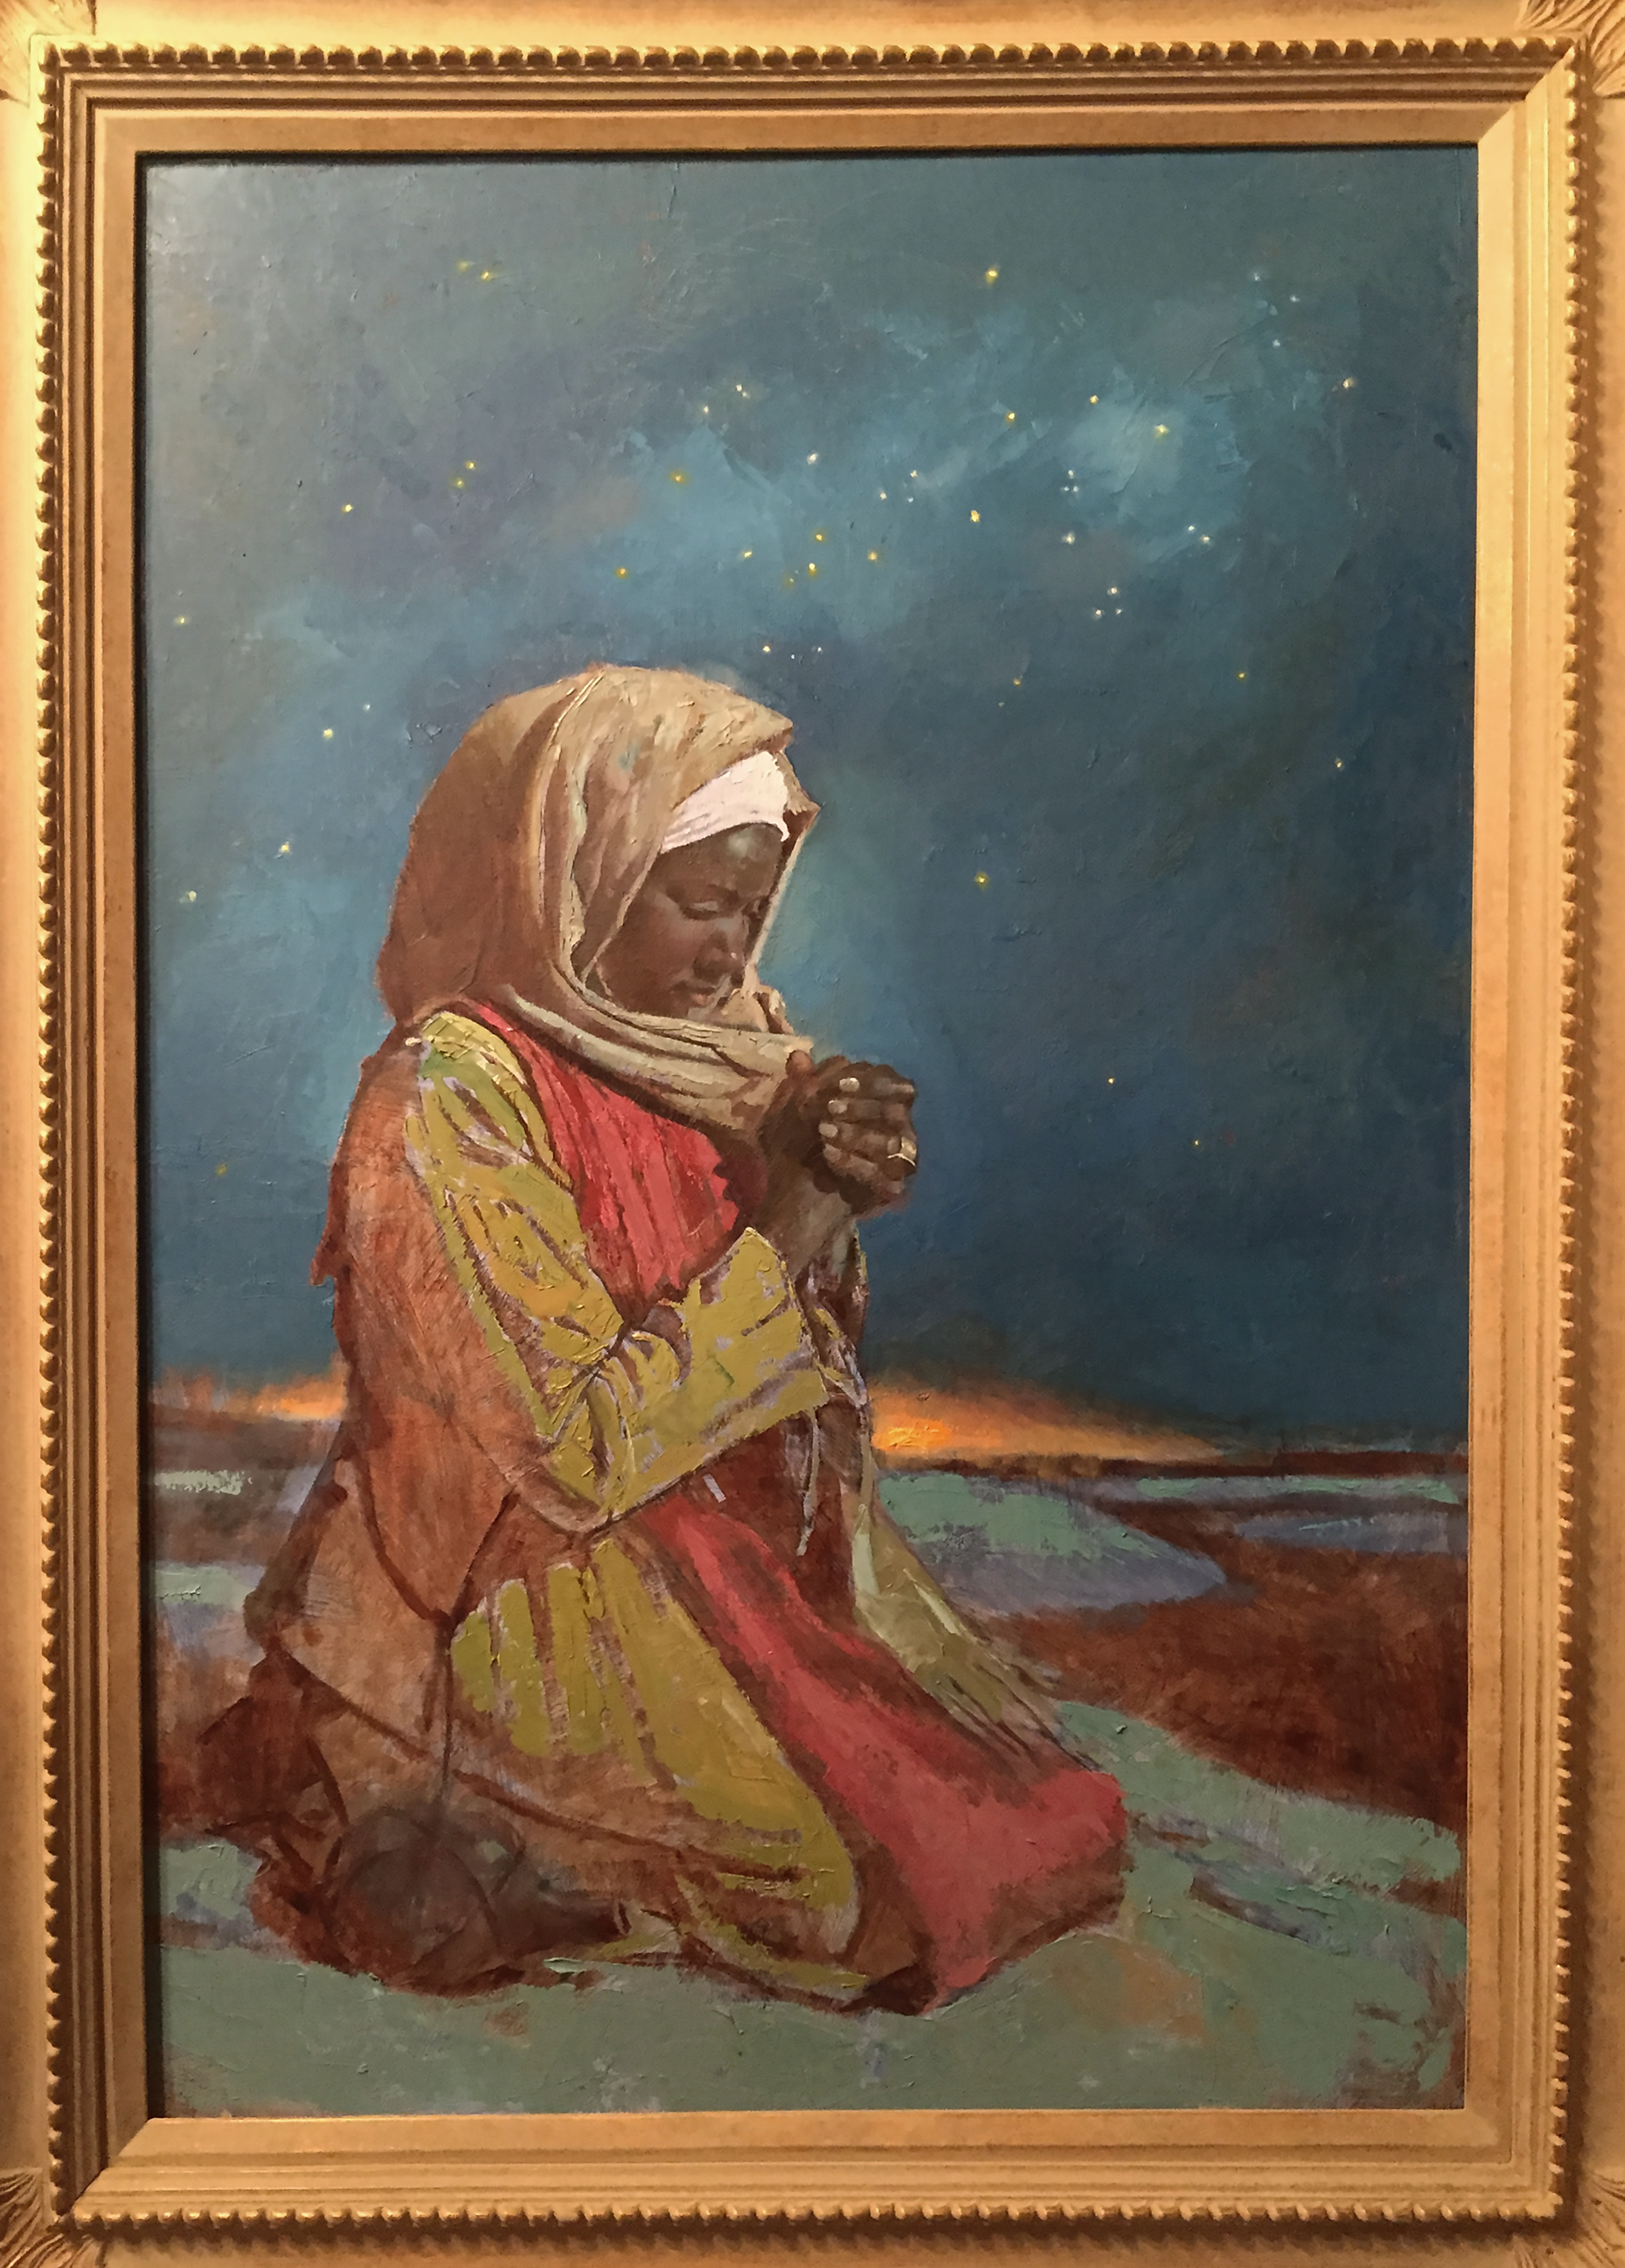 Prayer in the Desert